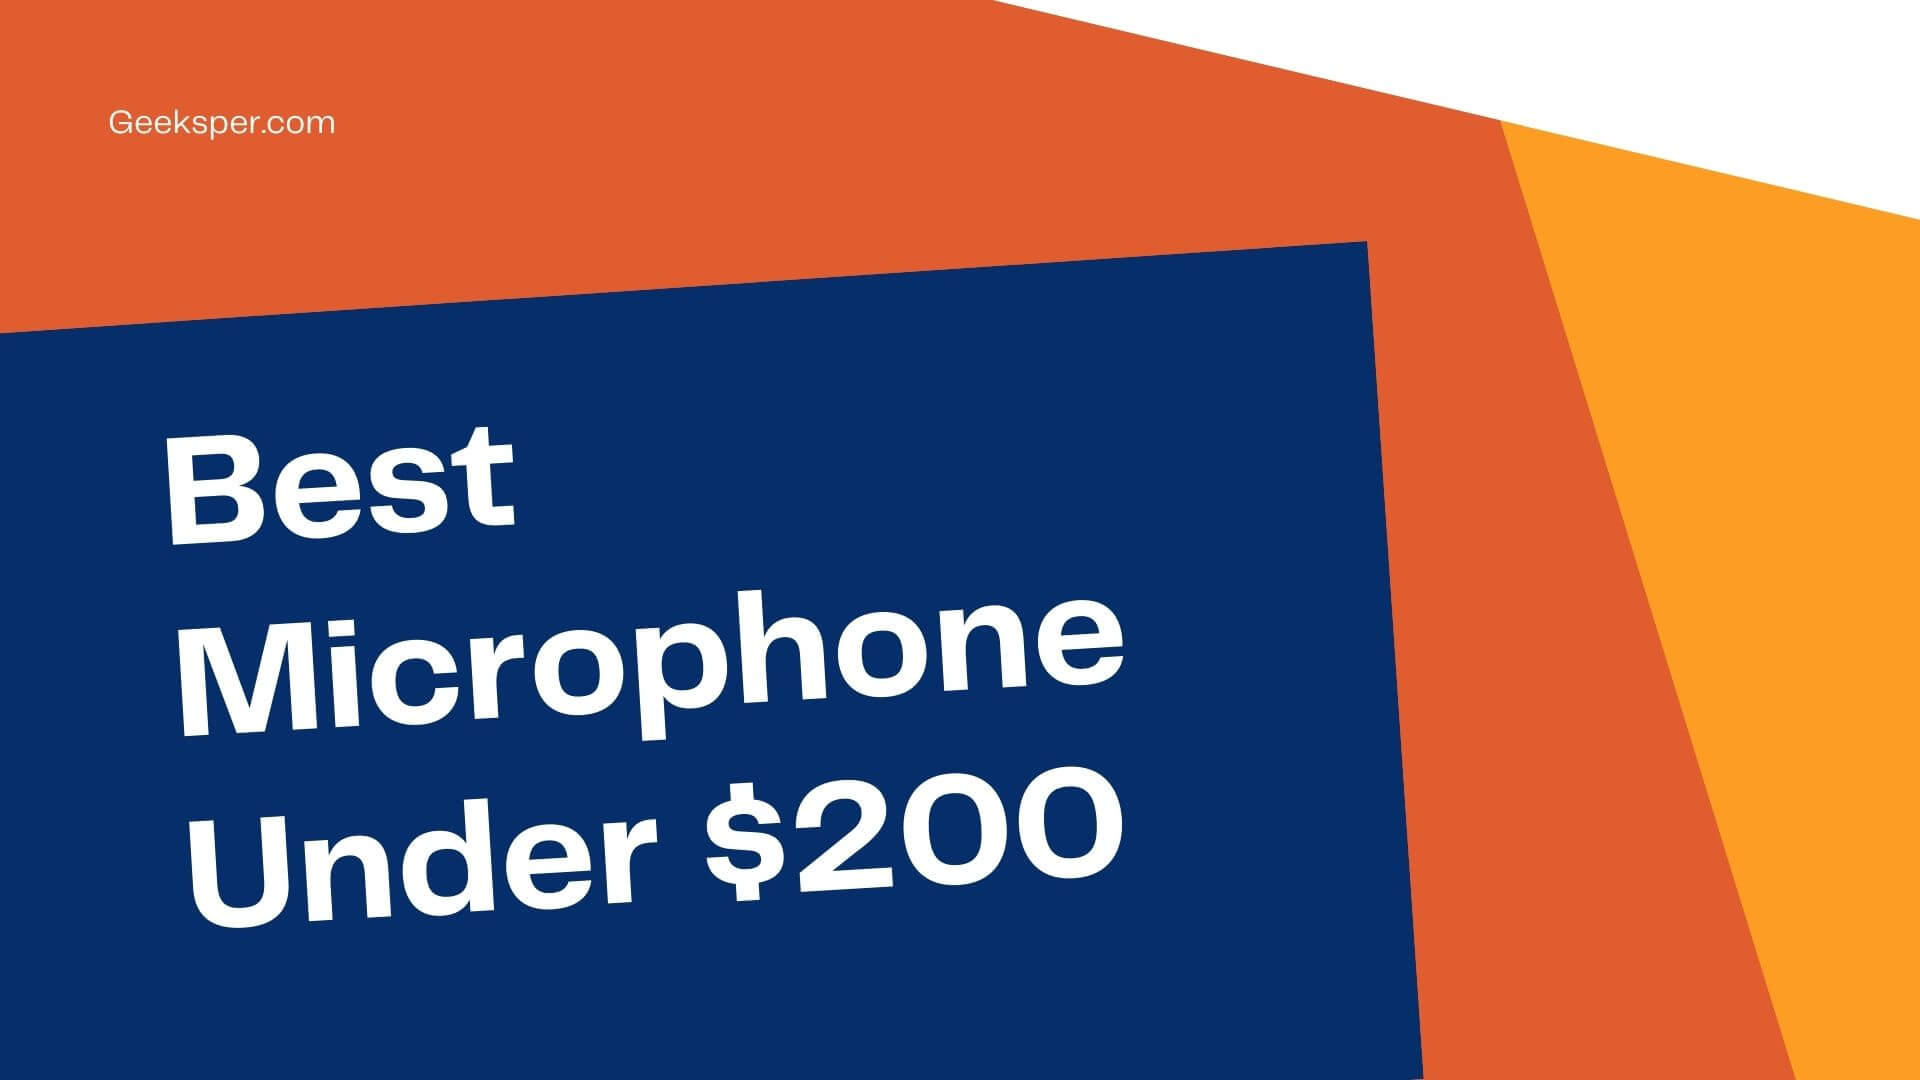 Best Microphone Under $200